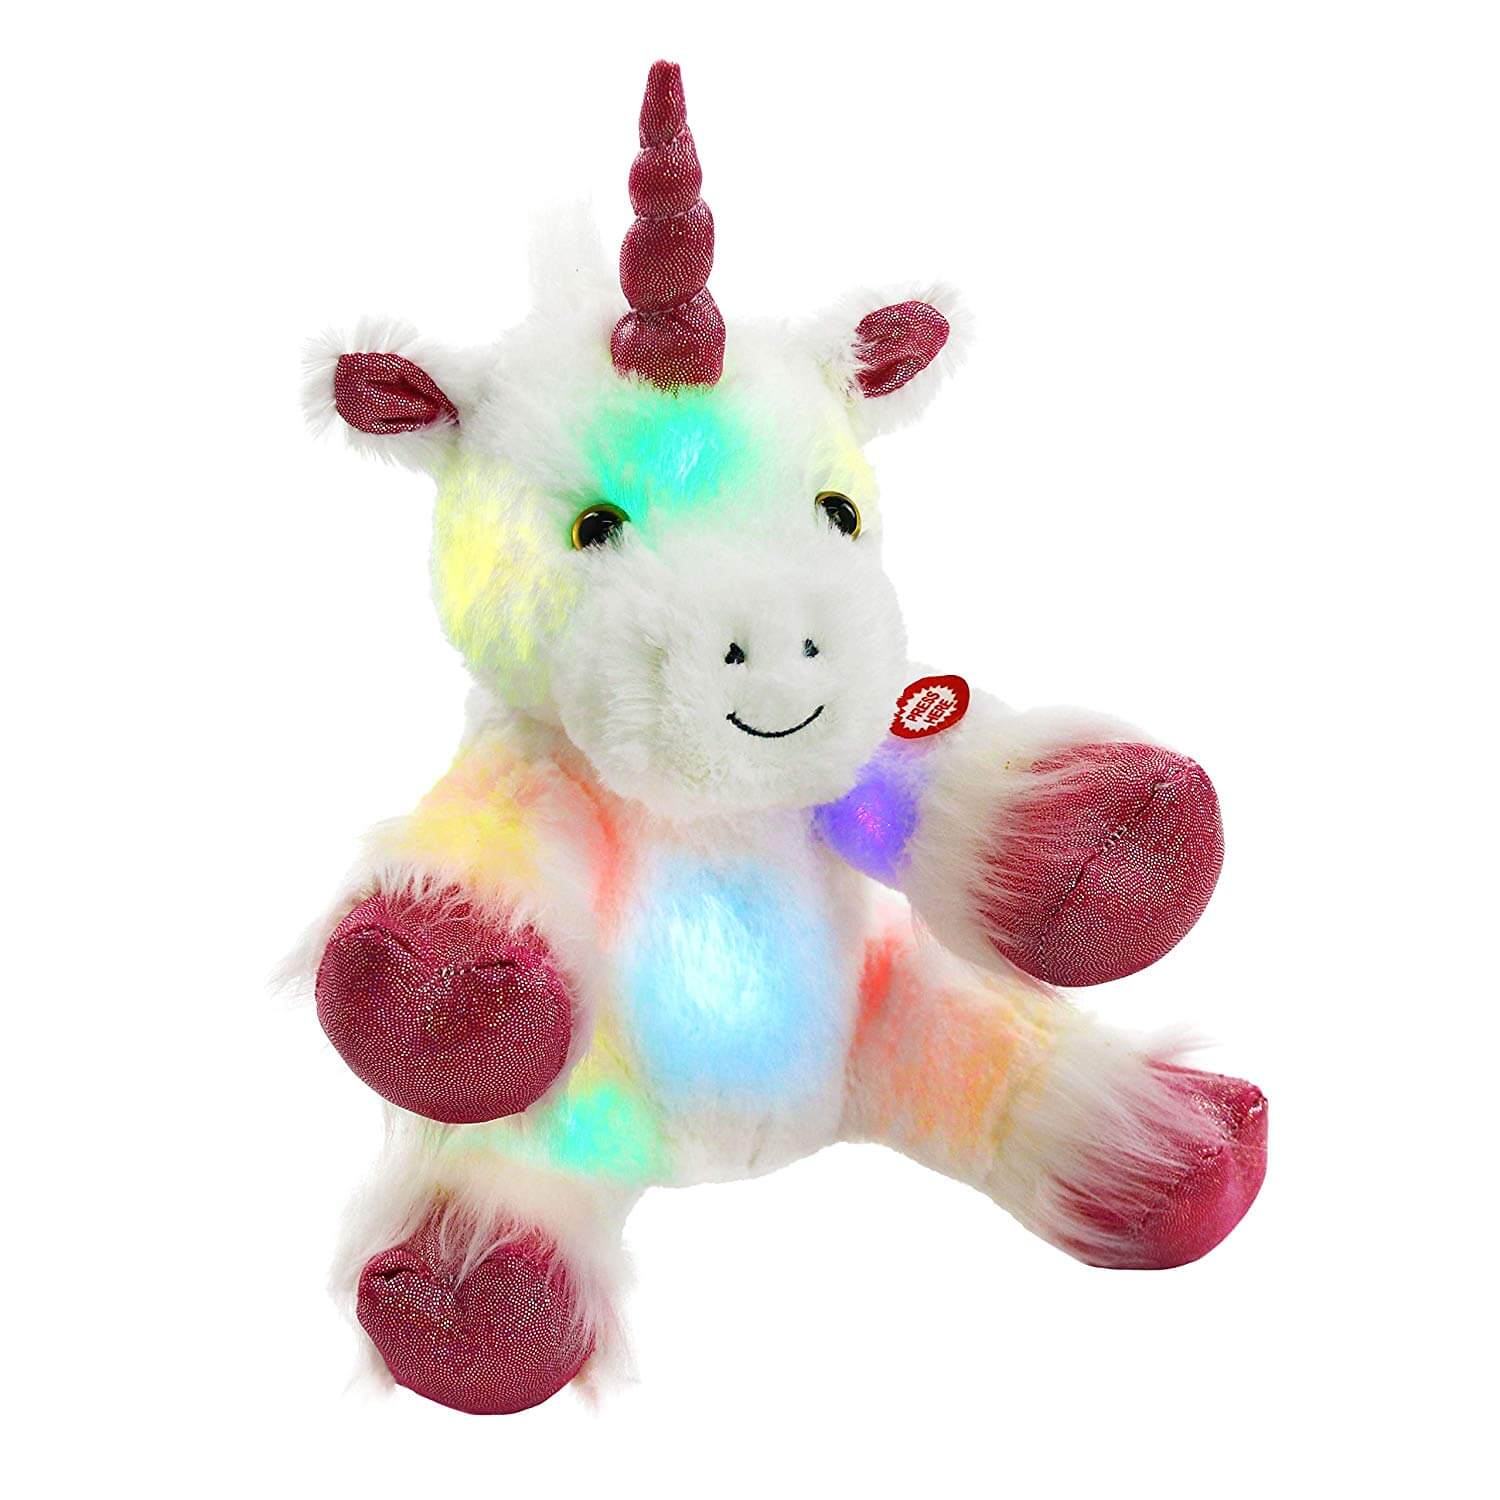 light up stuffed unicorn soft plush toy gift, | Bstaofy - Glow Guards